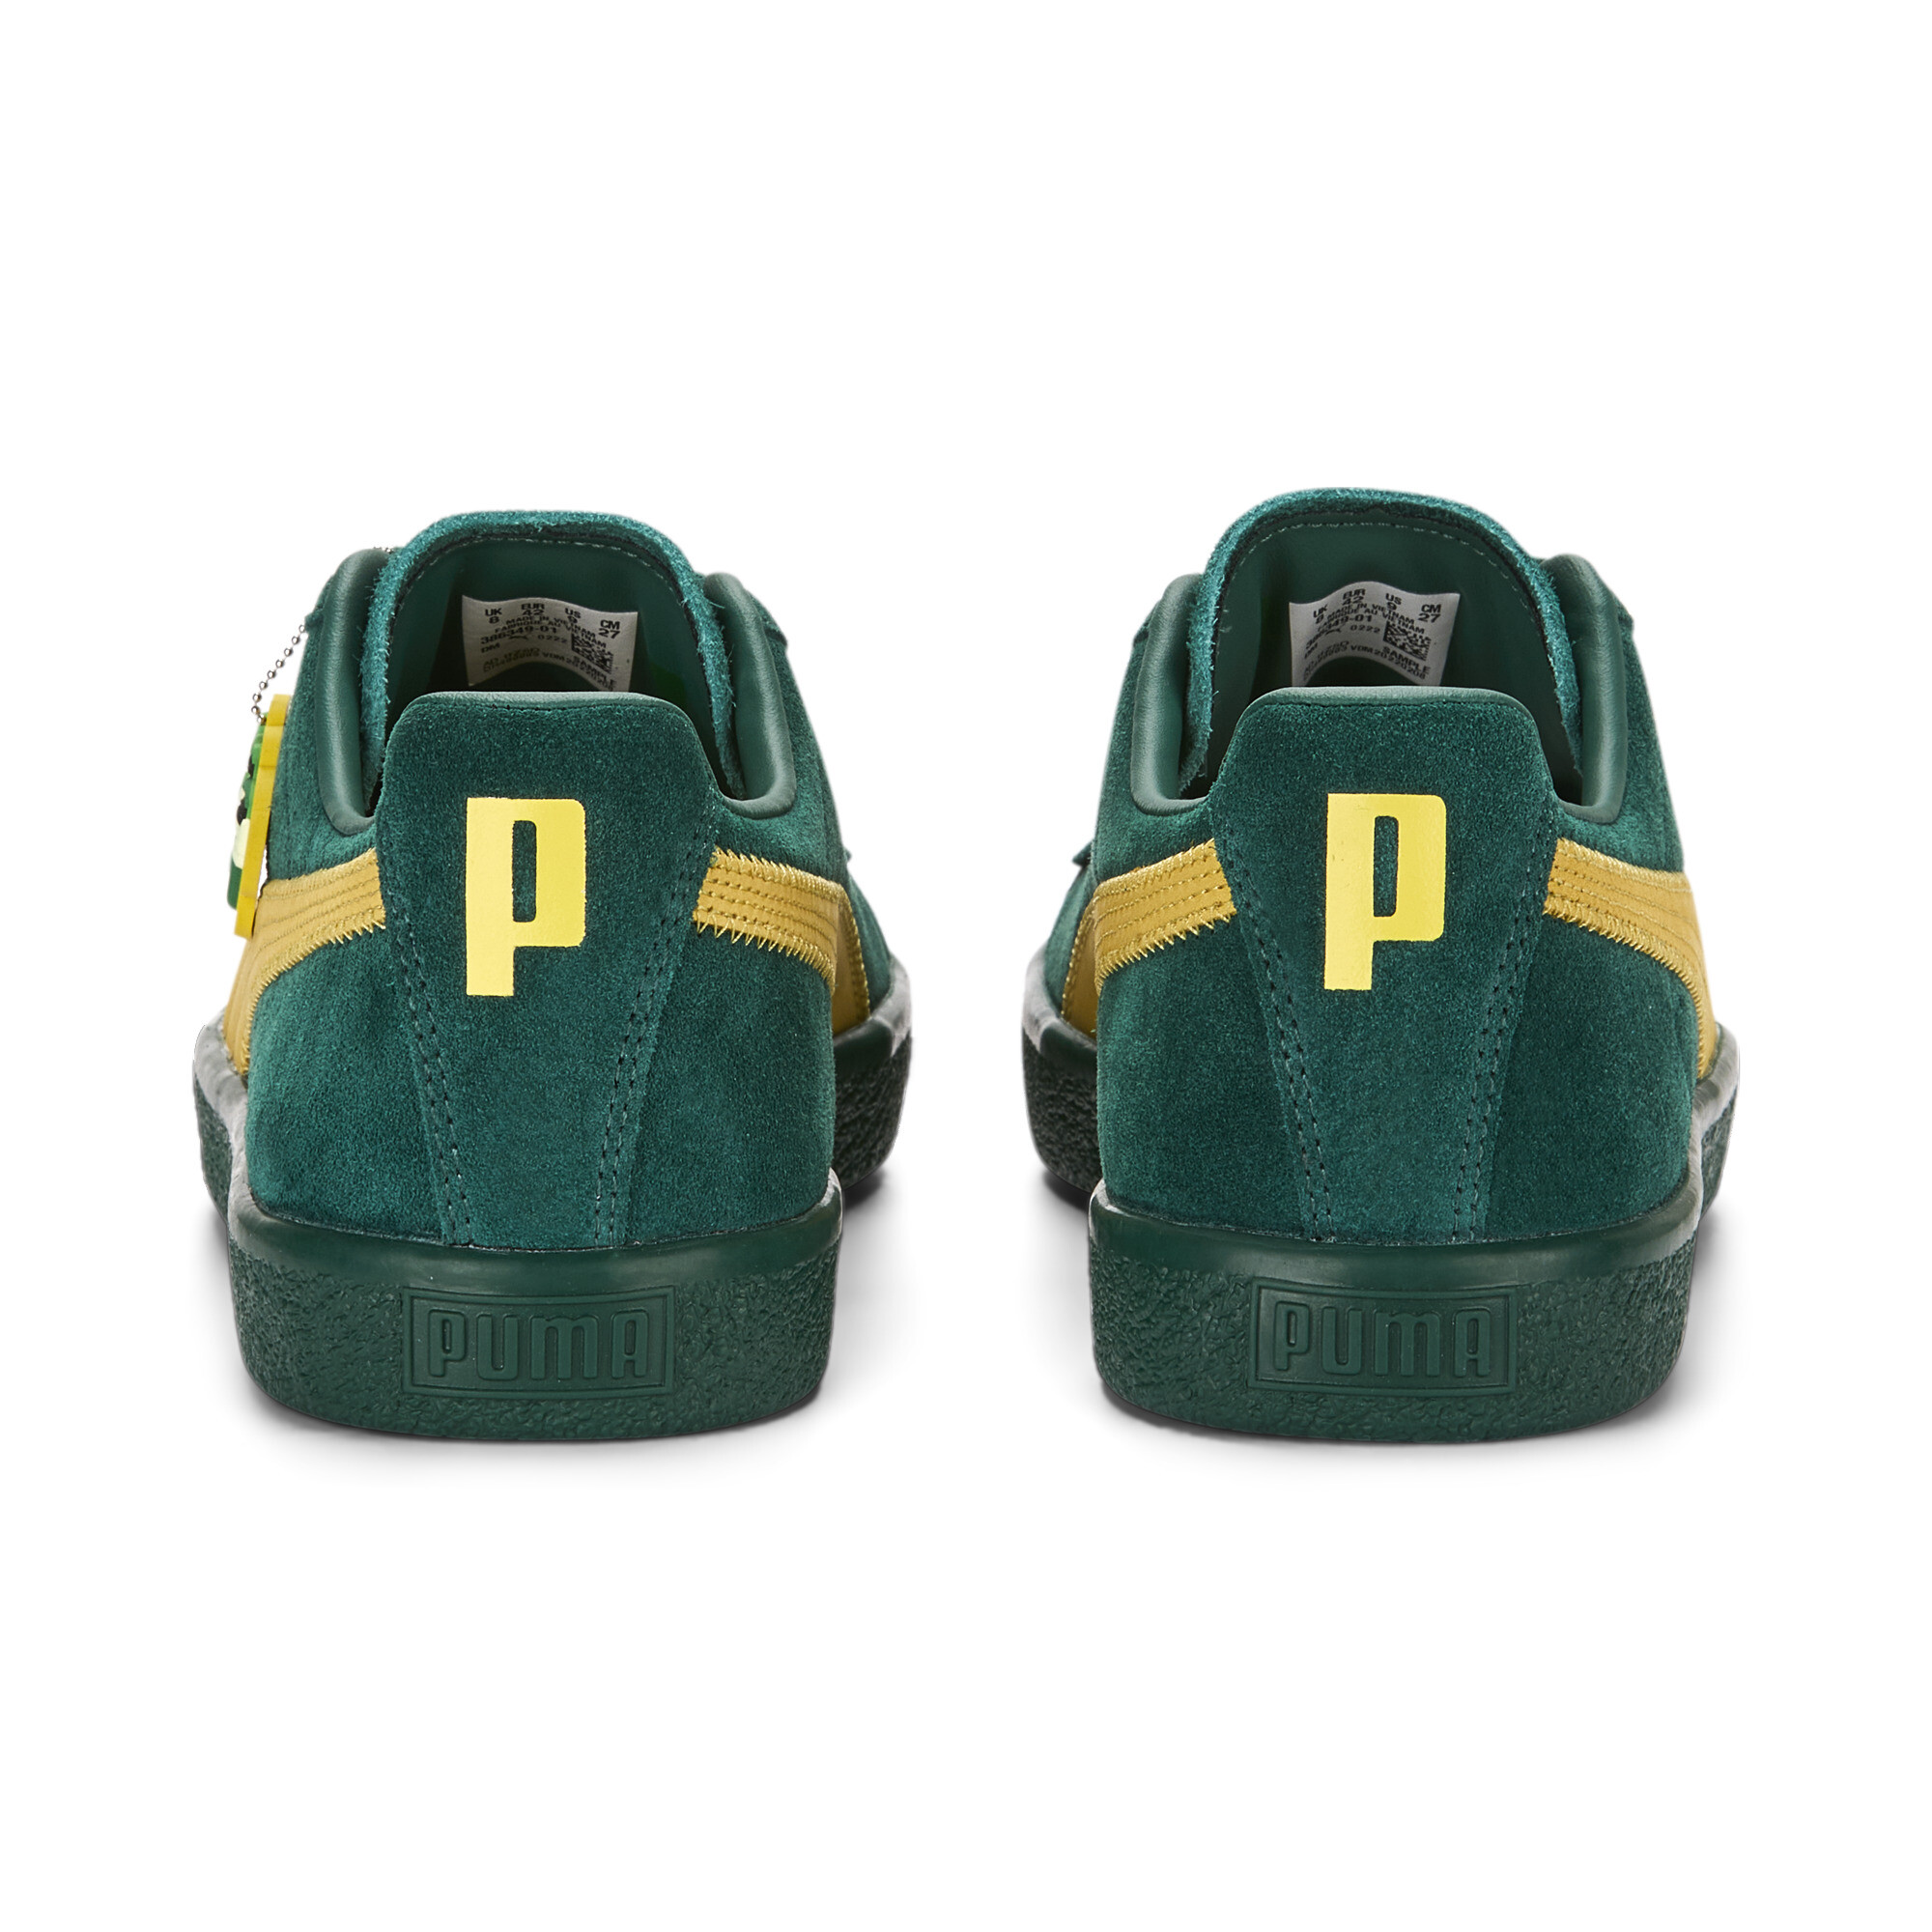 Men's Clyde Super PUMA Sneakers In 40 - Green, Size EU 38.5